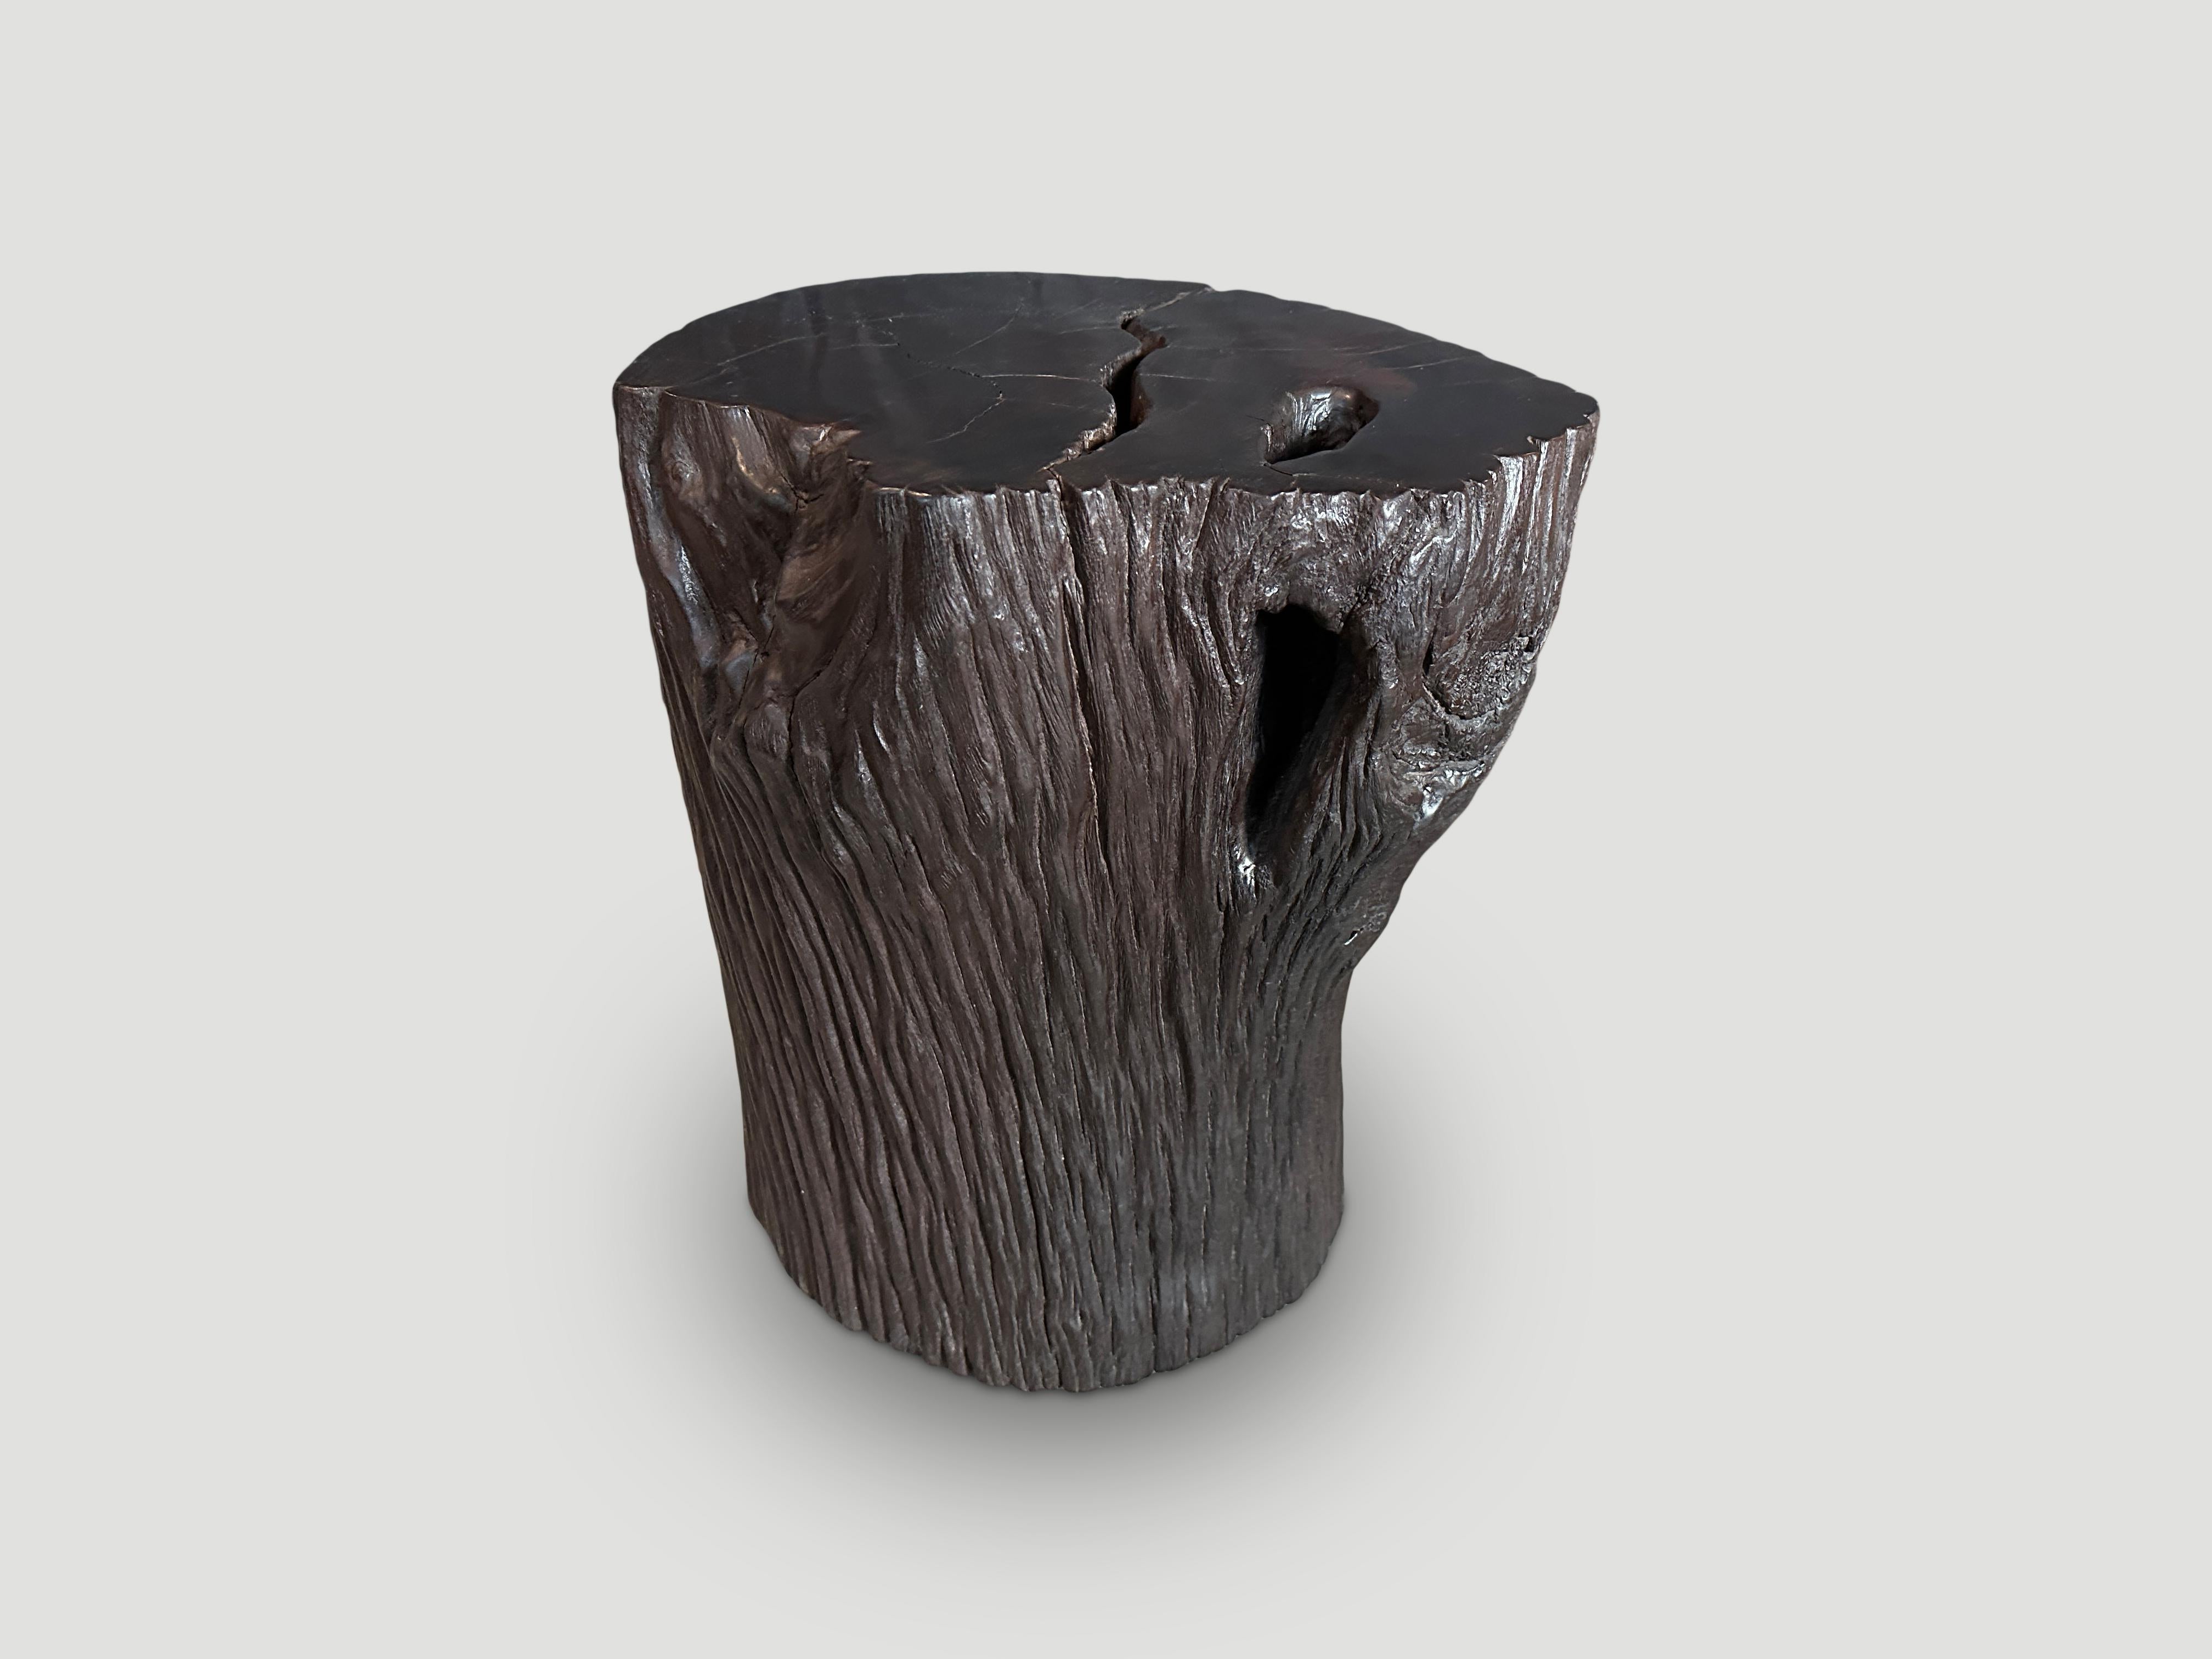 Beistelltisch oder Hocker aus recyceltem Ulin-Holz. Auch bekannt als Eisenholz. Gekohlt, geschliffen und versiegelt, wobei das natürliche, organische Holz respektiert wird. Wir haben eine Politur hinzugefügt, die die schöne Holzmaserung zum